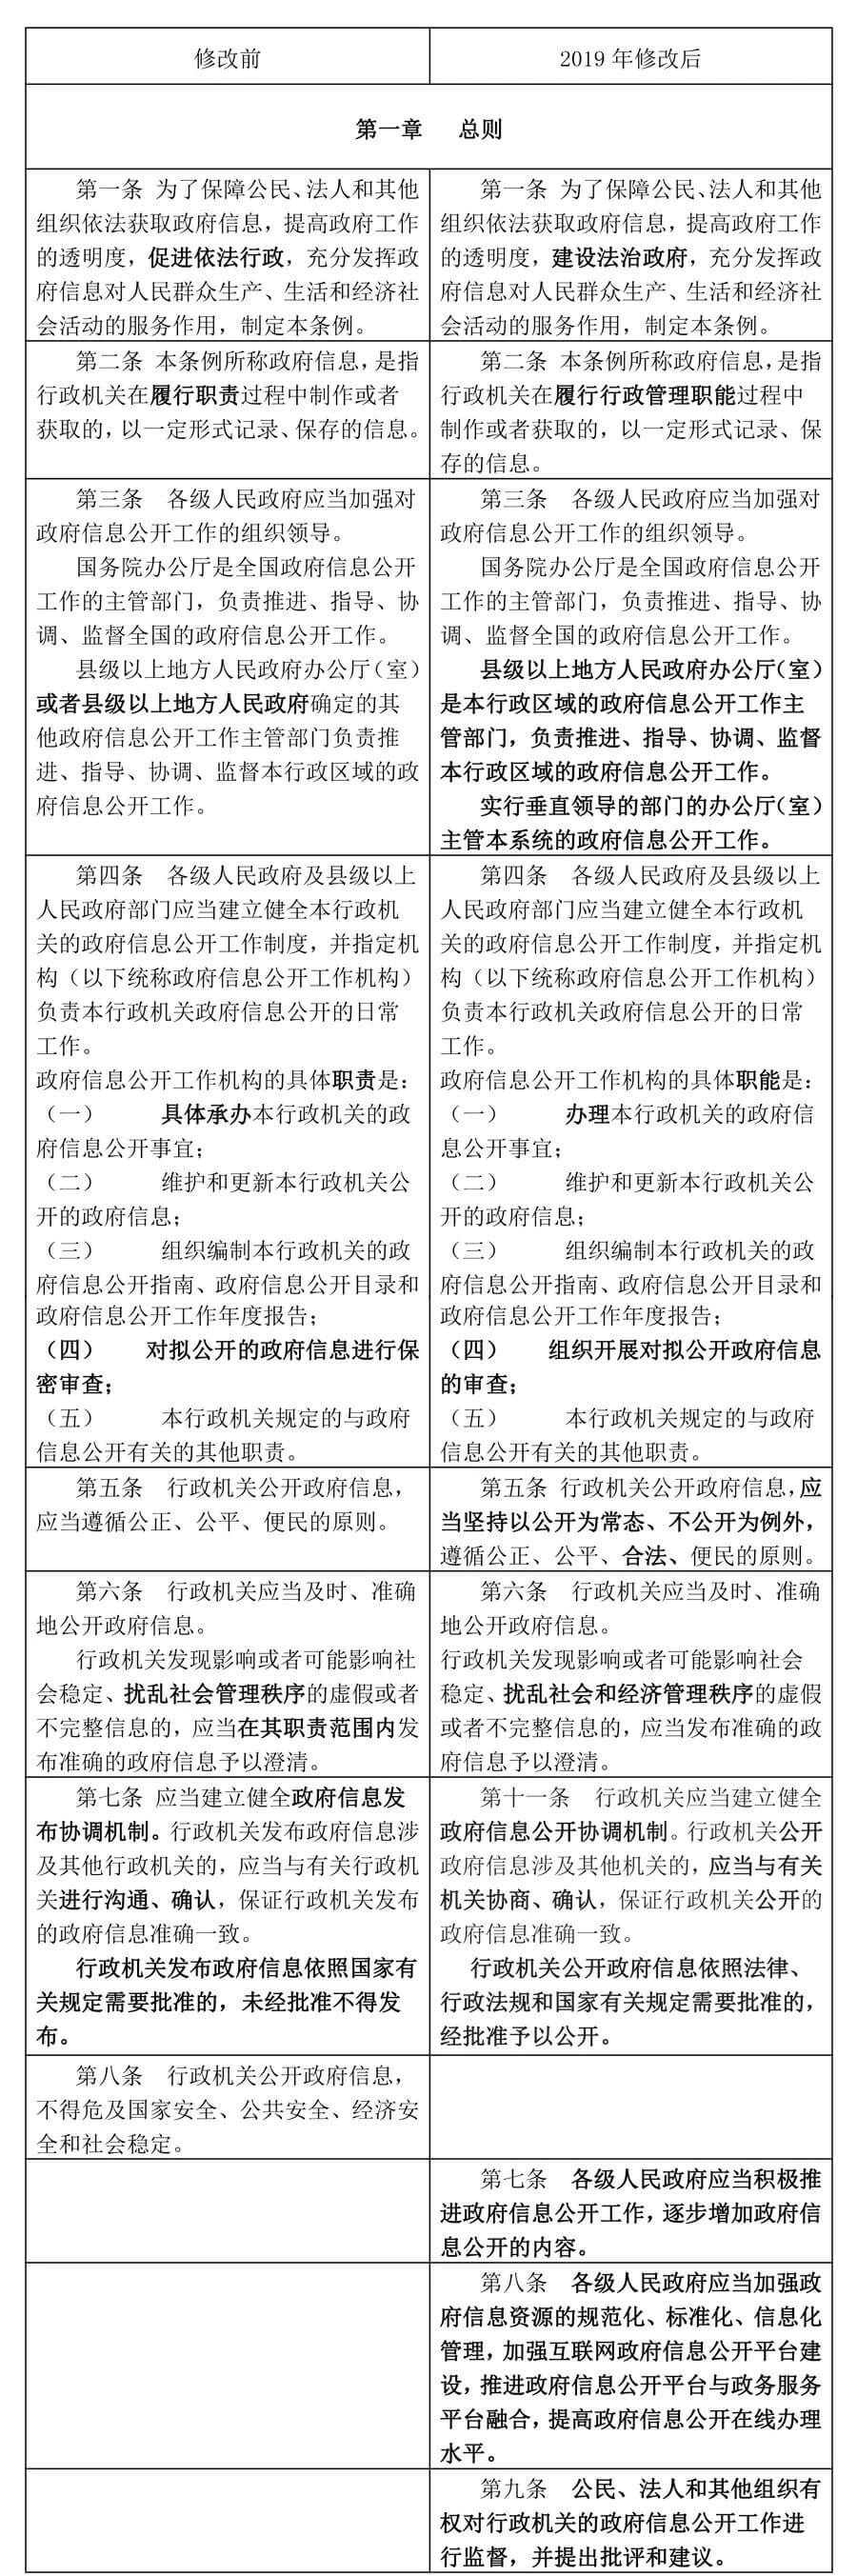 新《中华人民共和国政府信息公开条例》将于2019年5月15日起施行（附新旧条文比照）